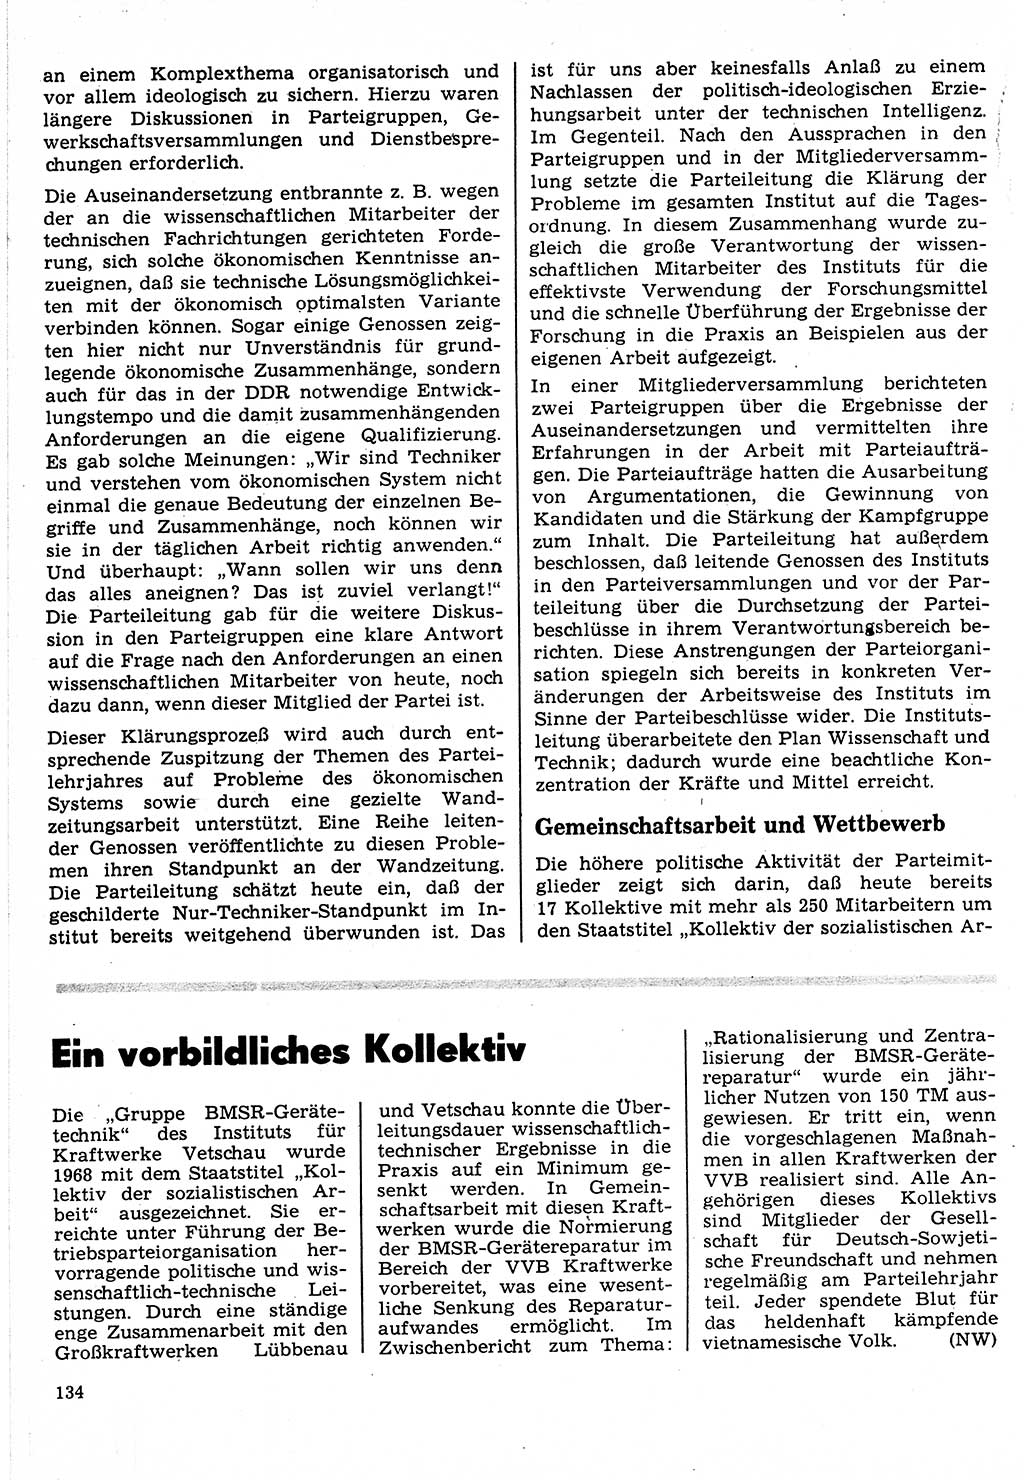 Neuer Weg (NW), Organ des Zentralkomitees (ZK) der SED (Sozialistische Einheitspartei Deutschlands) für Fragen des Parteilebens, 24. Jahrgang [Deutsche Demokratische Republik (DDR)] 1969, Seite 134 (NW ZK SED DDR 1969, S. 134)